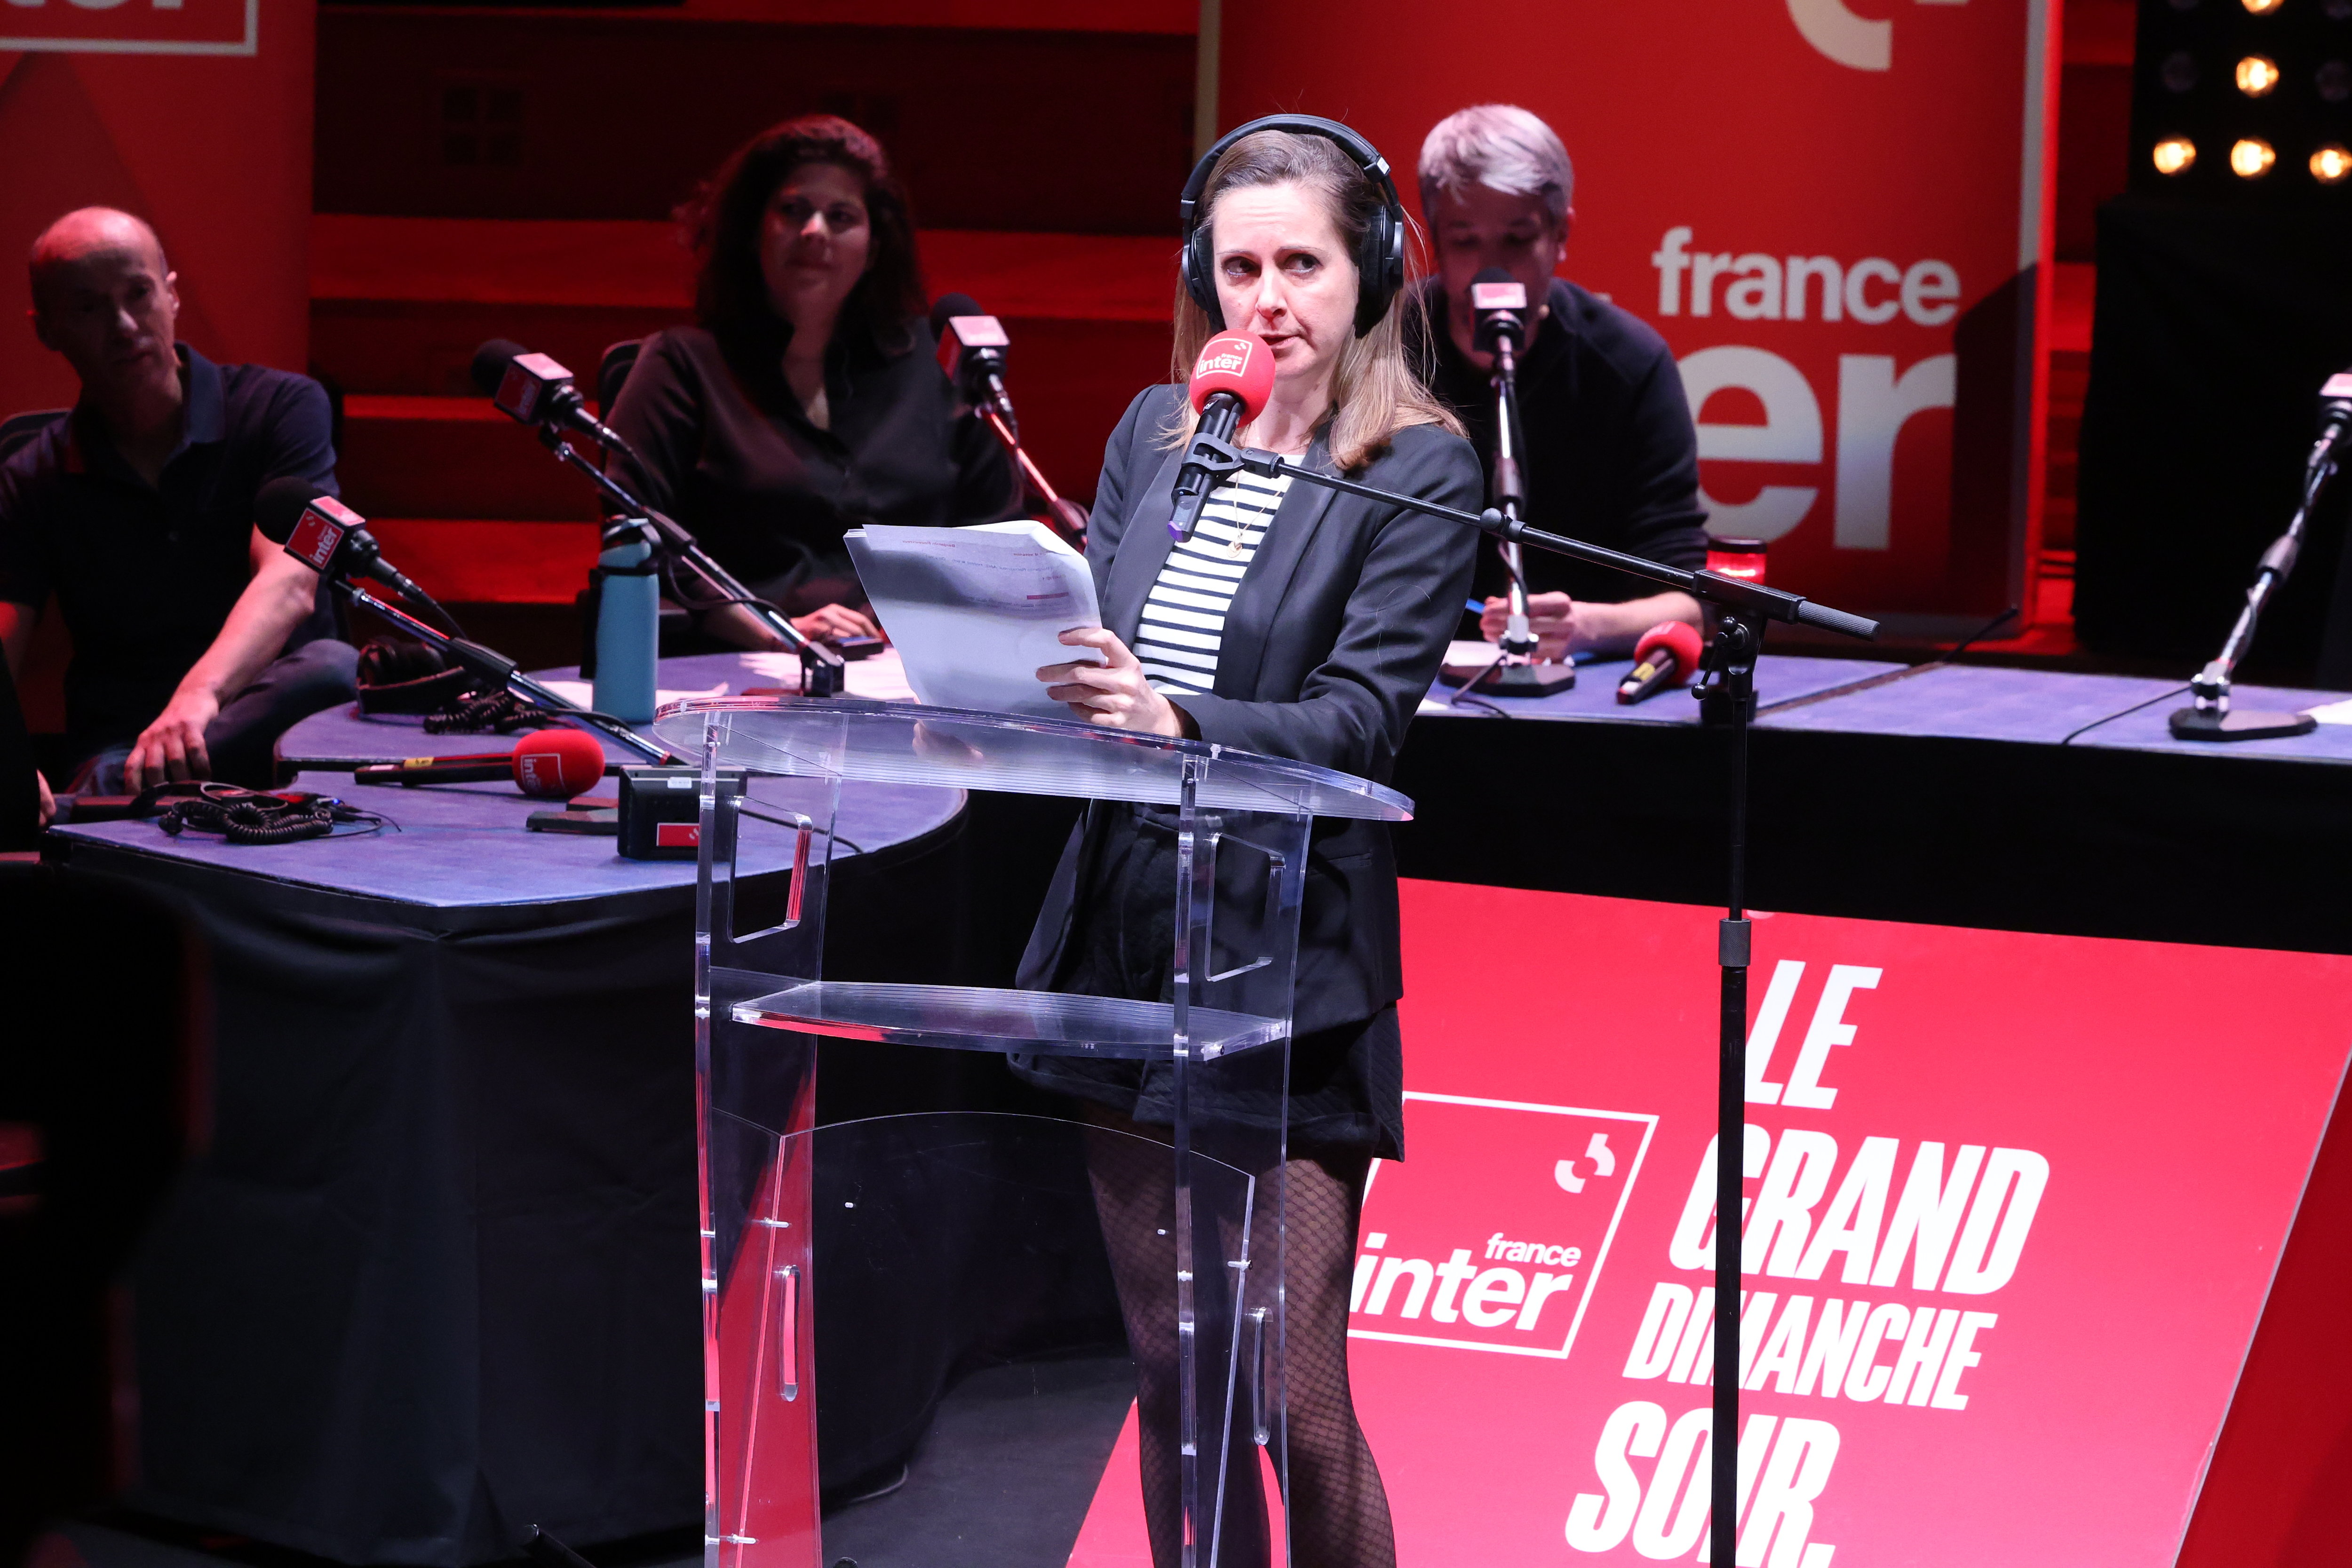 La présentatrice belge Charline Vanhoenacker, ici le 18 février, en direct pour son émission «Le Grand Dimanche Soir» sur France Inter. LP/Philippe Lavieille